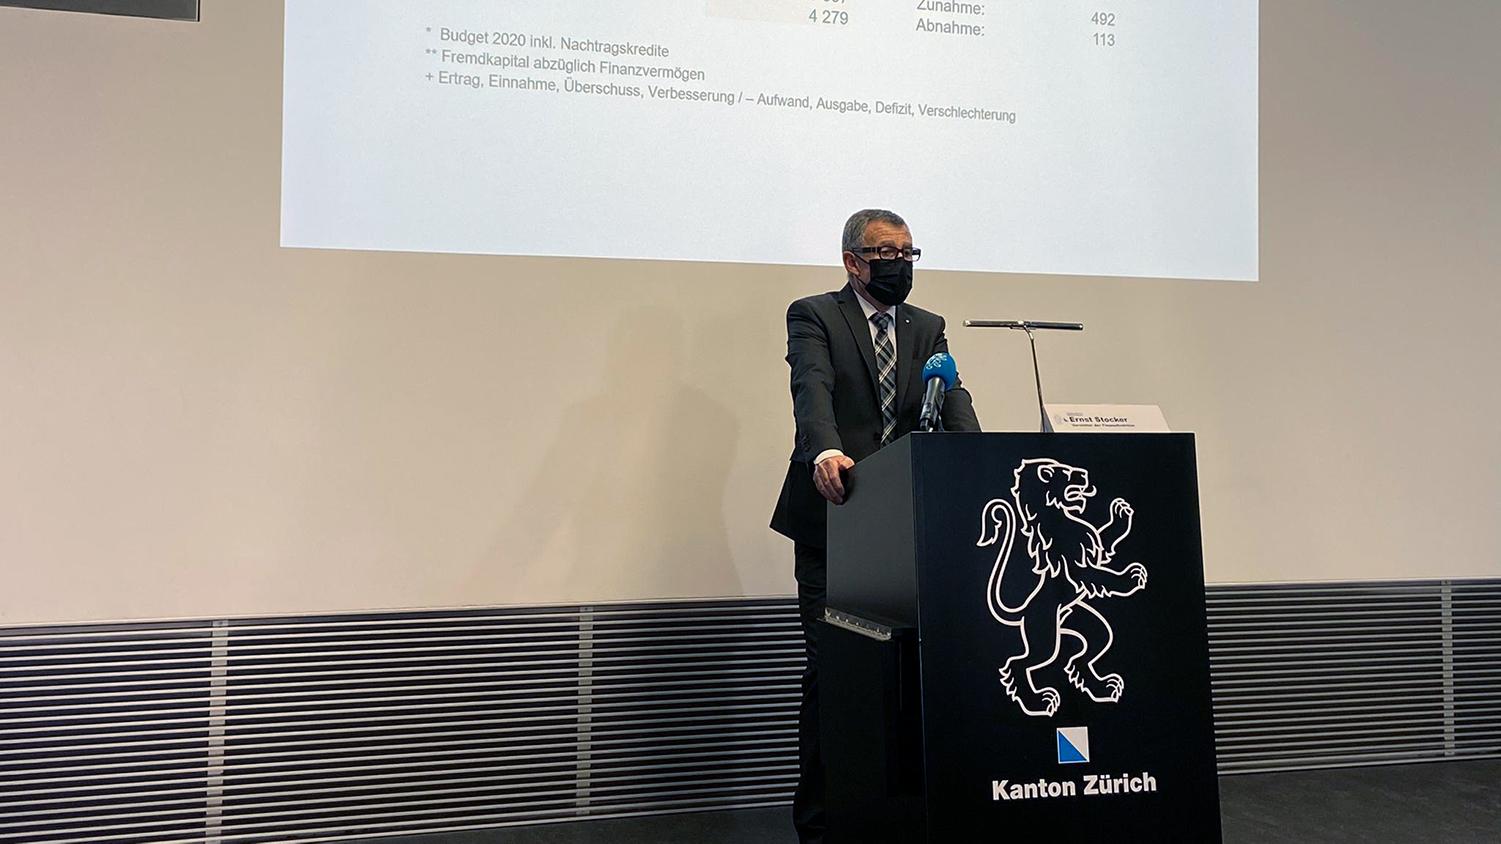 Medienkonferenz «Rechnungsabschluss 2020 des Kantons Zürich» vom 12. März 2021